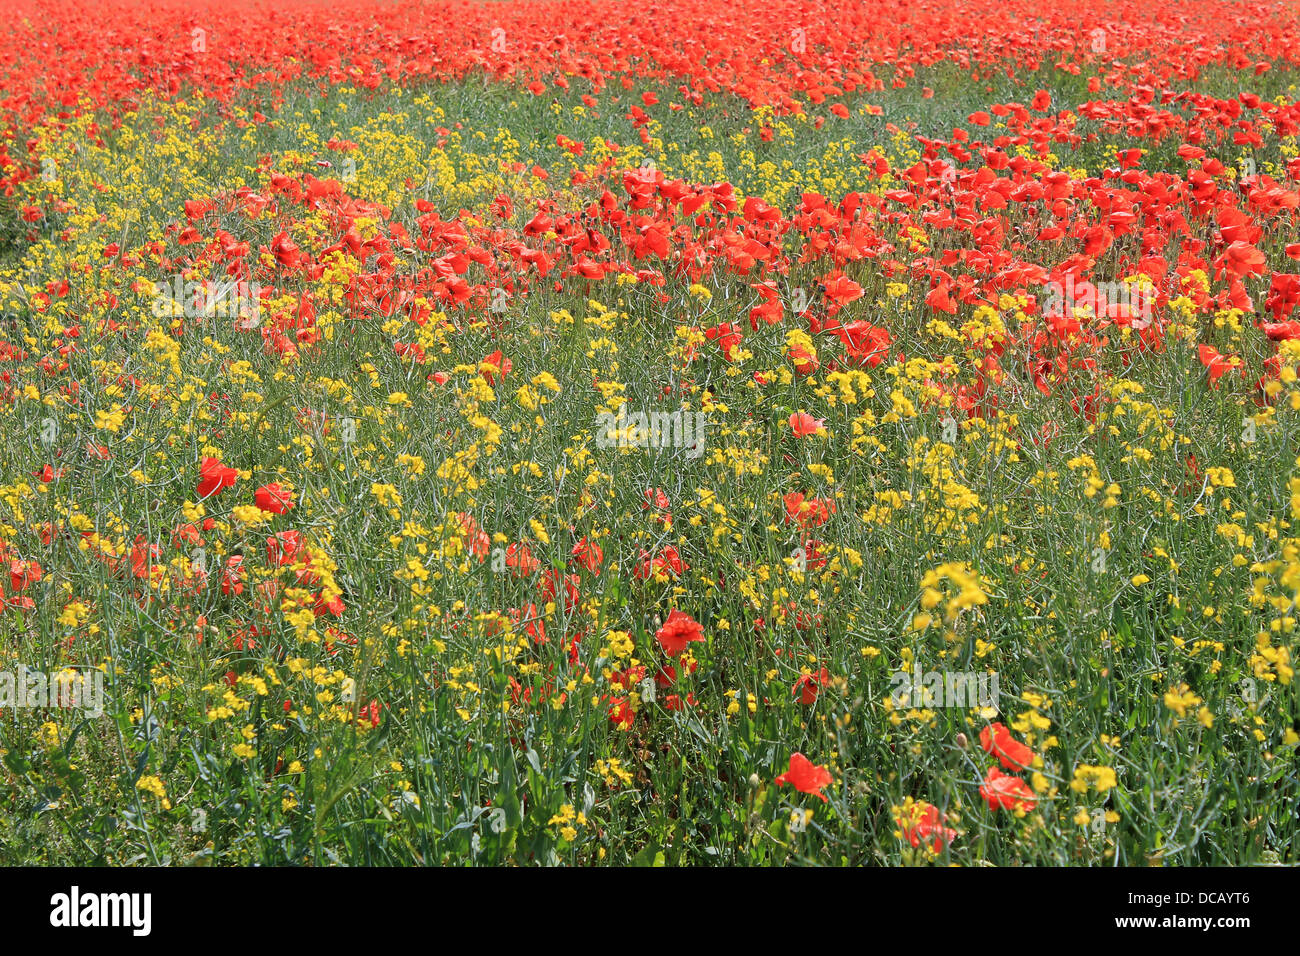 Hintergrund der roten und gelben Mohn Blumen in voller Blüte. Stockfoto